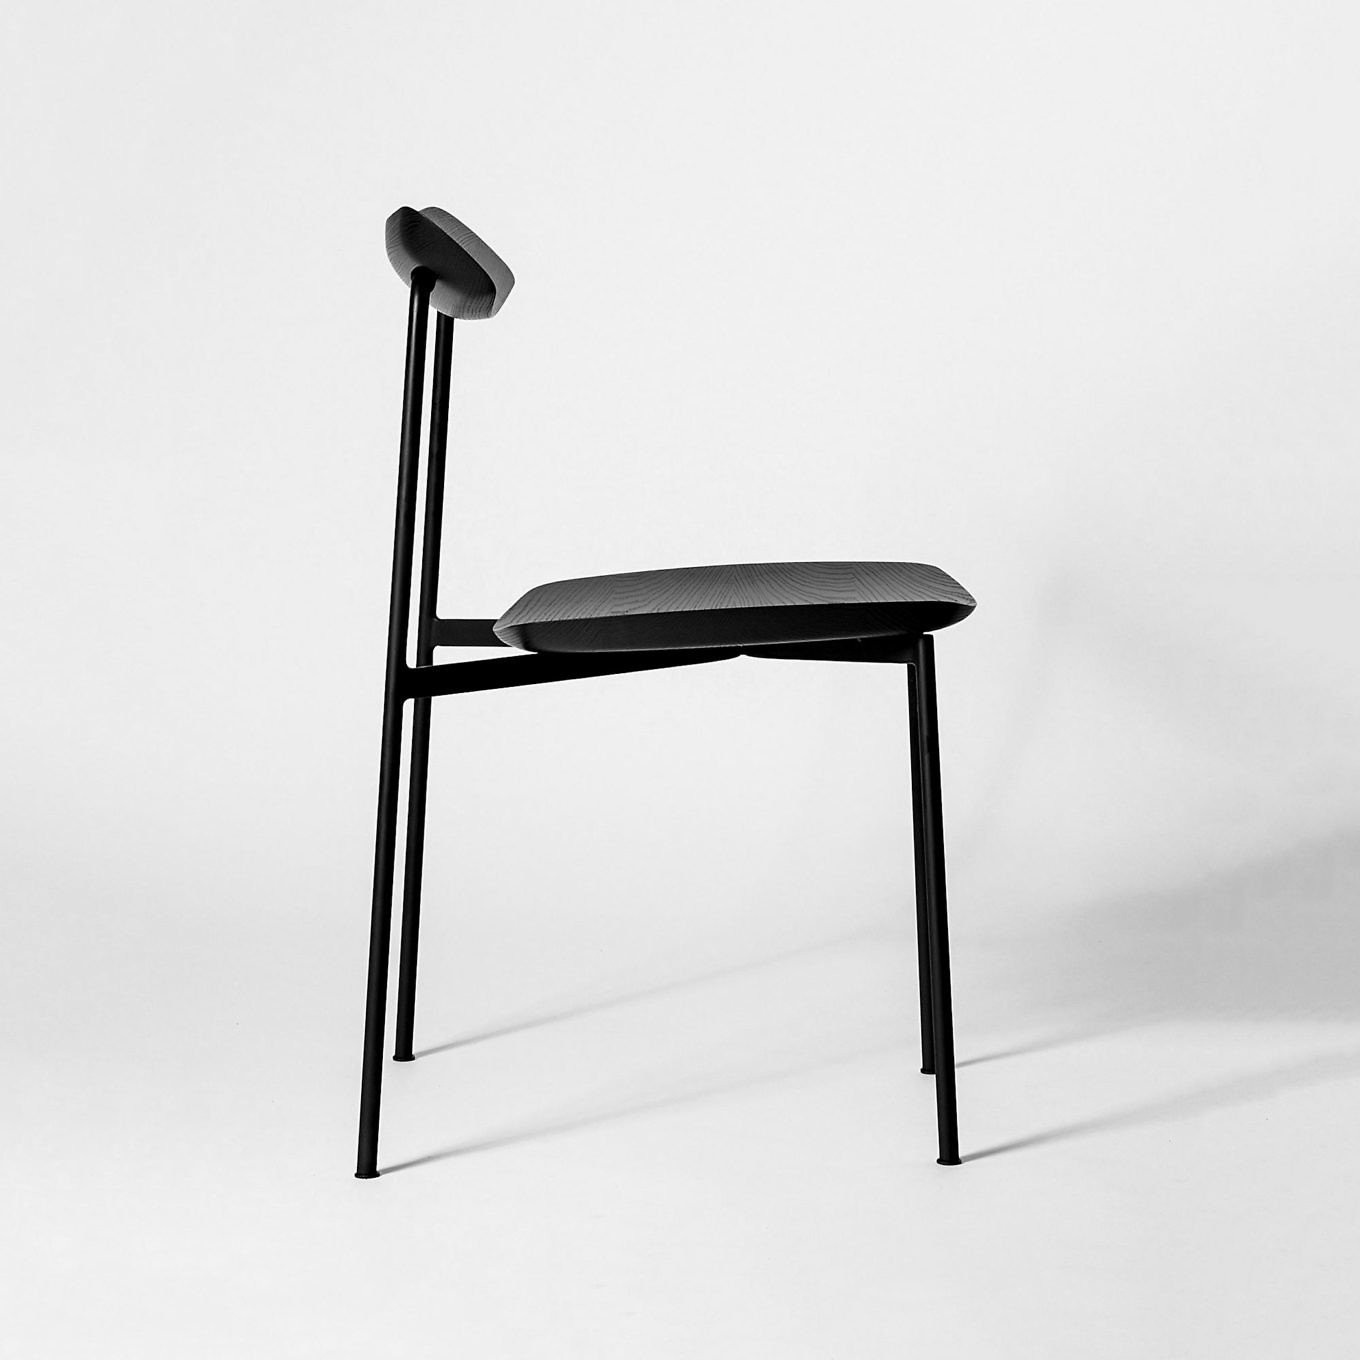 Minimal Chair Design: SIA